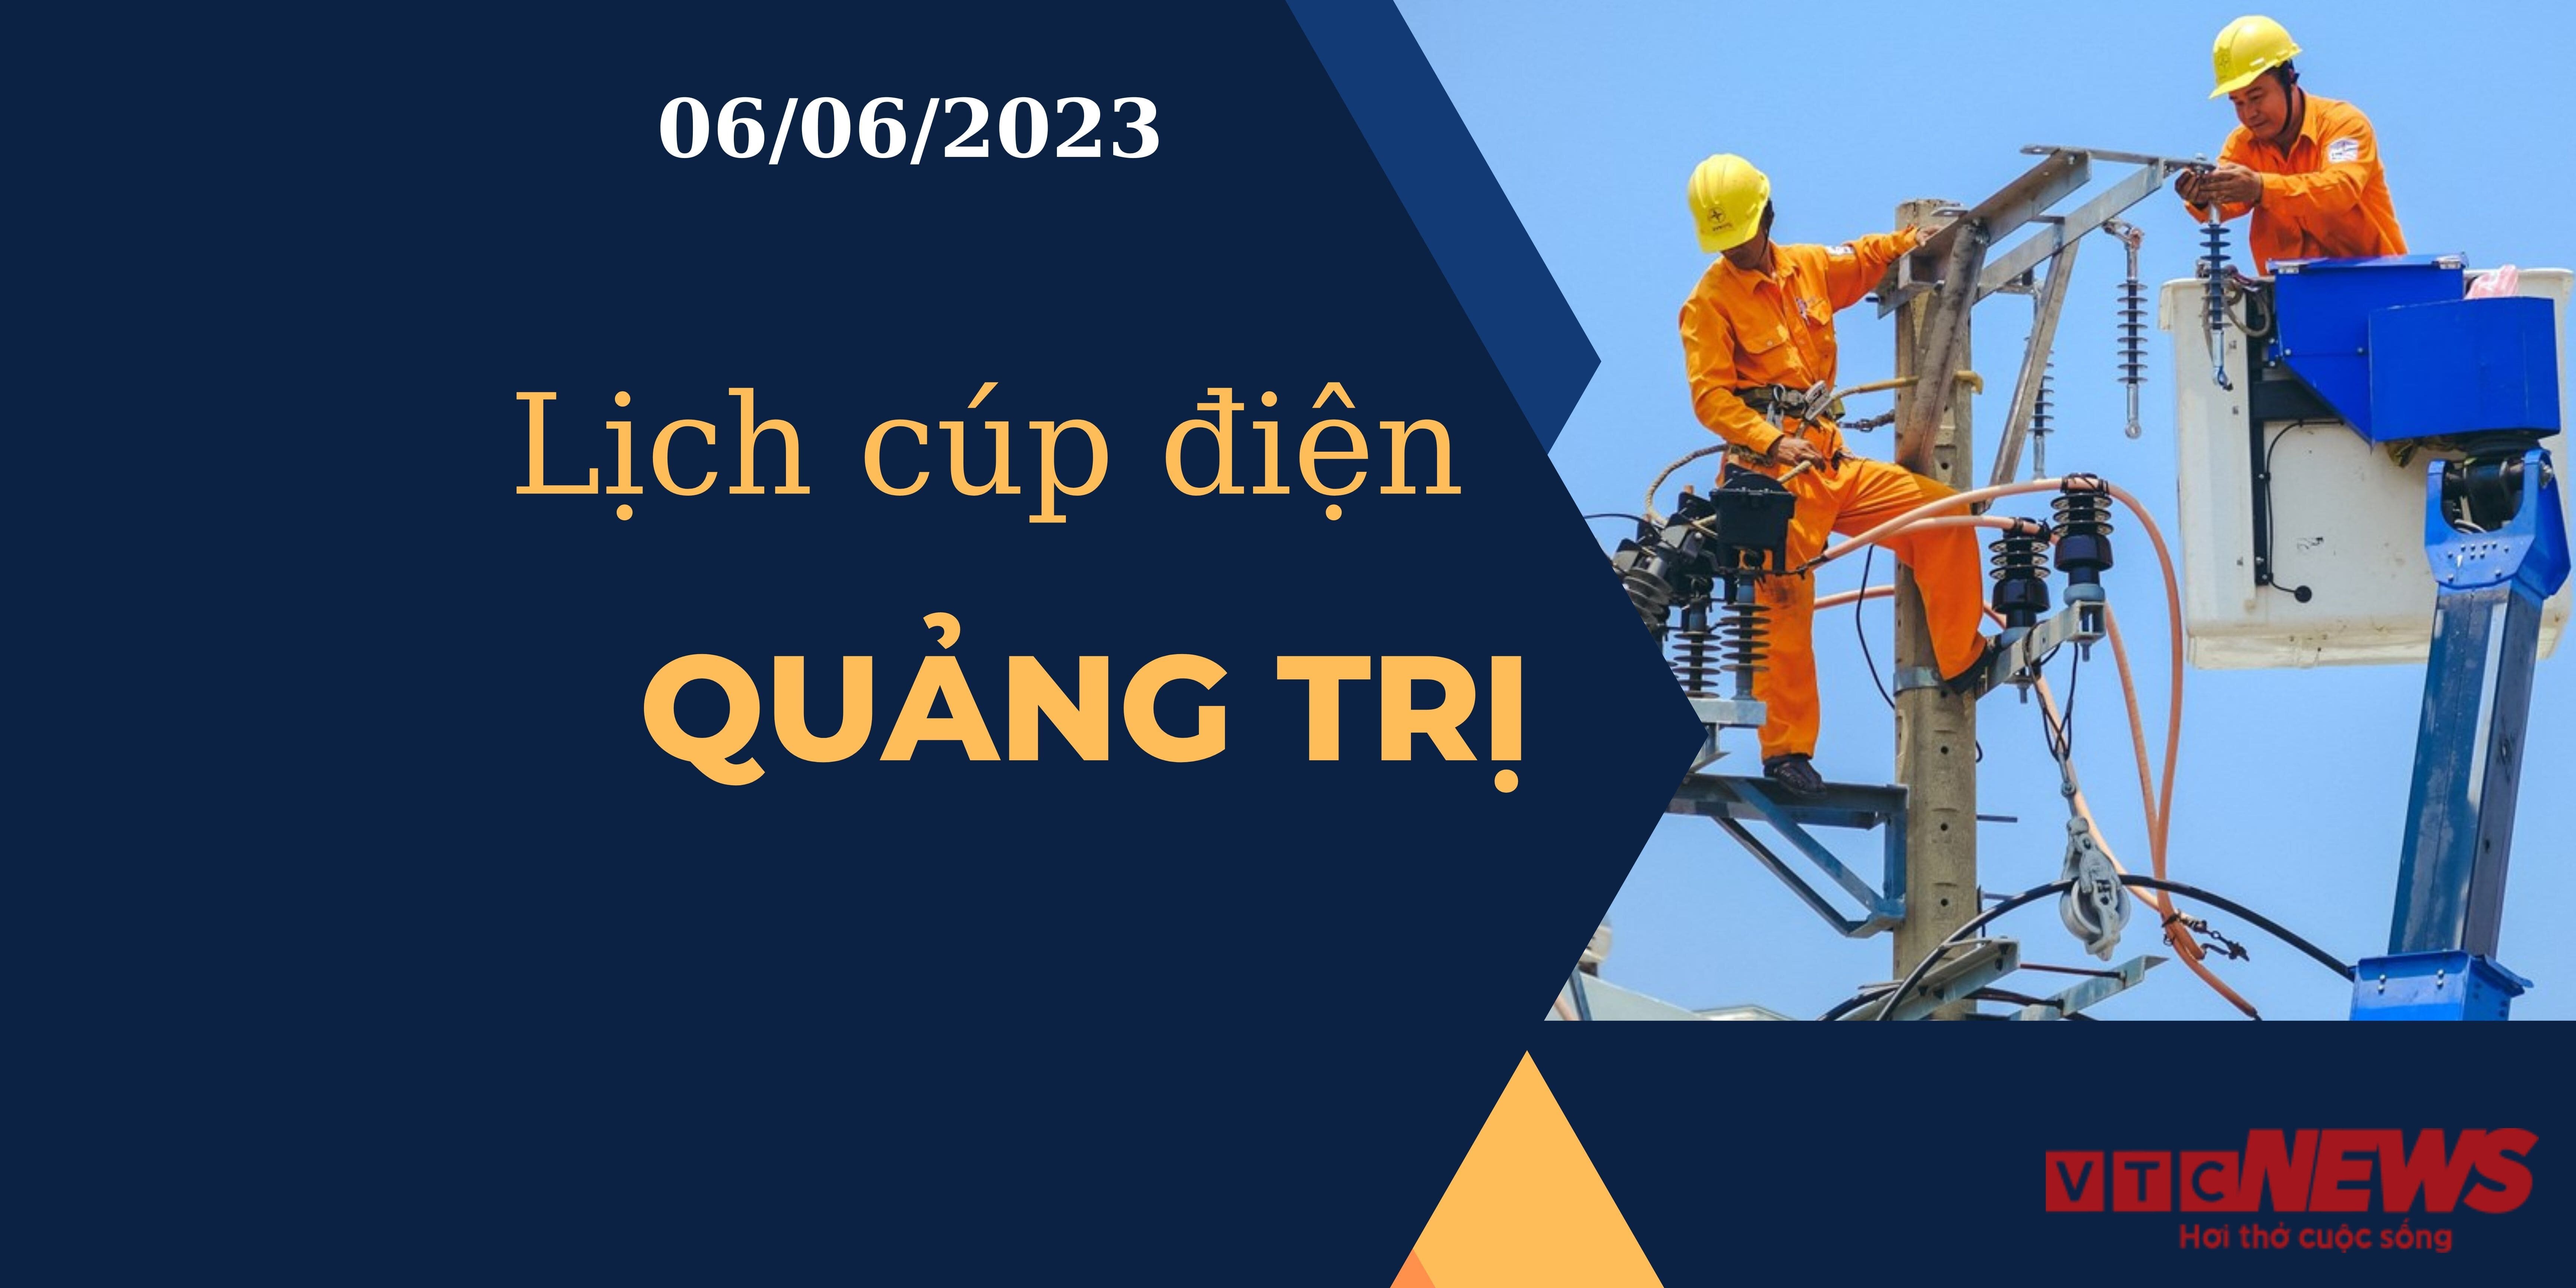 Lịch cúp điện hôm nay tại Quảng Trị ngày 06/06/2023 - 1